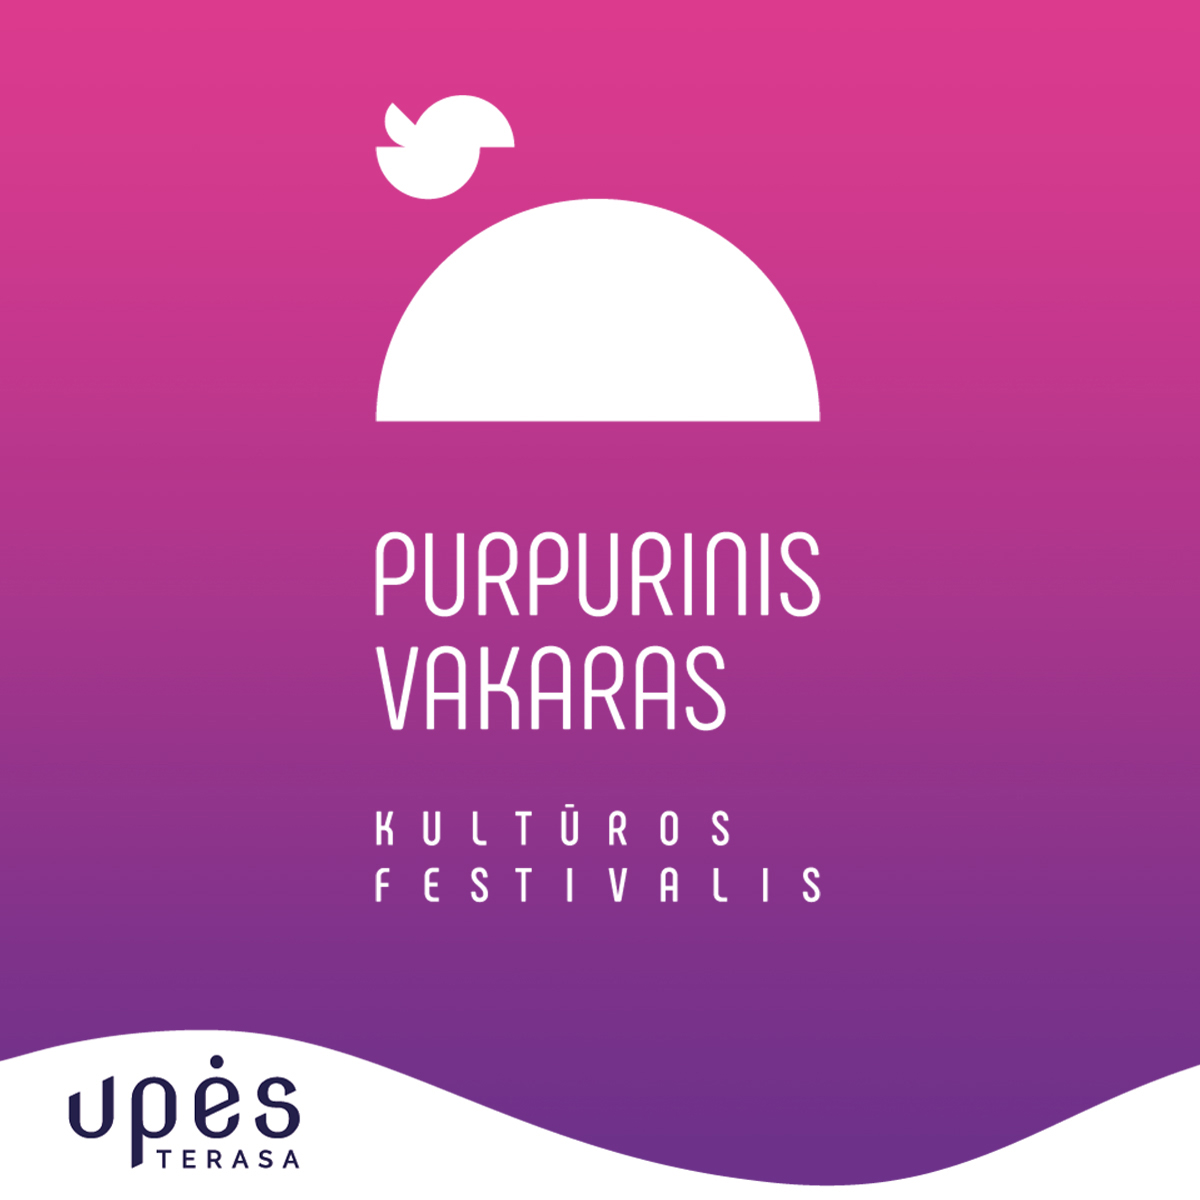 Rugpjūčio 11 d. Upės terasoje įžanginis kultūros festivalio „Purpurinis vakaras“ koncertas